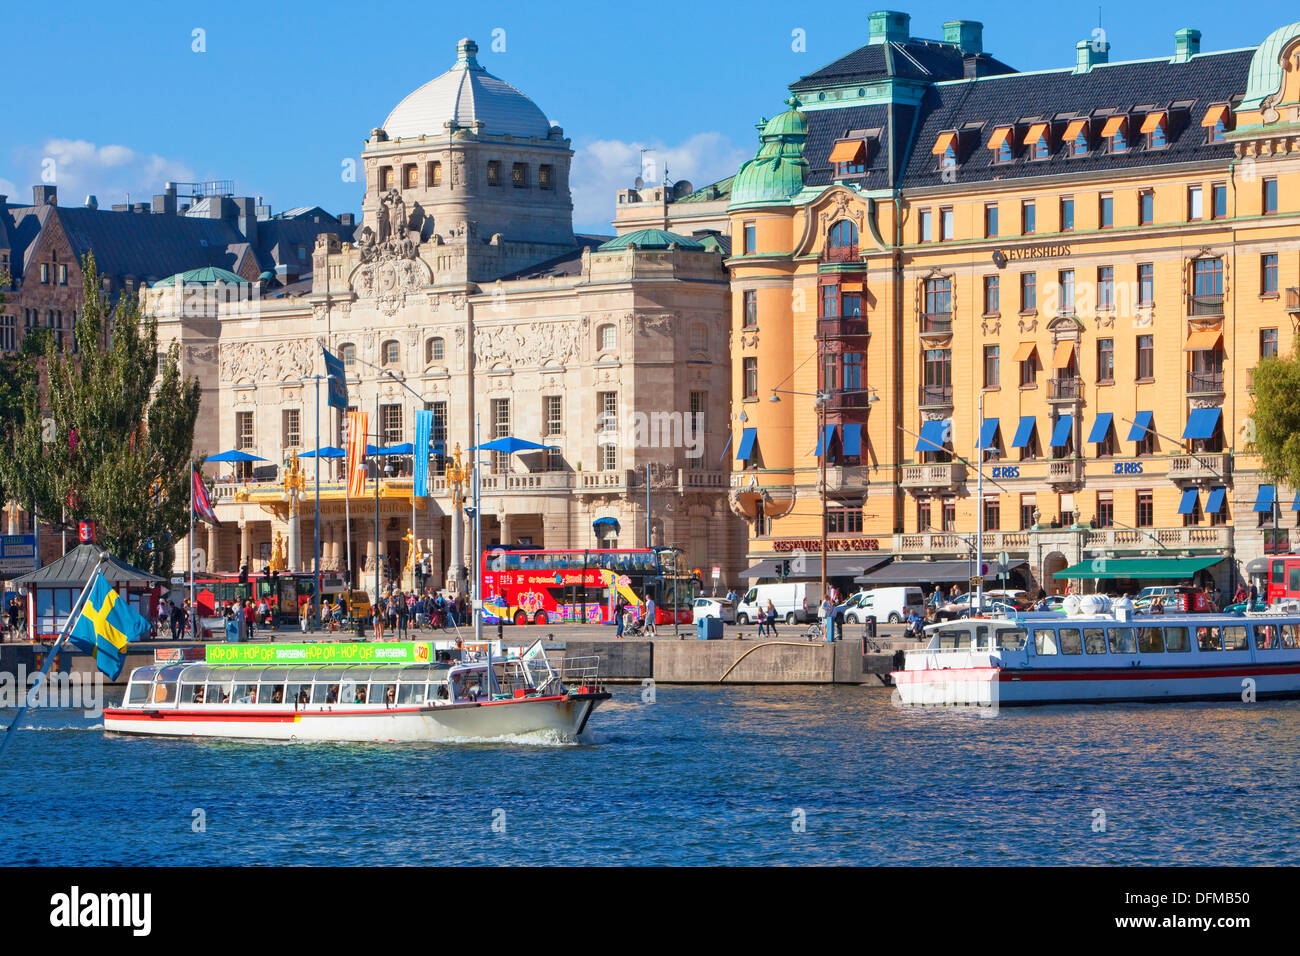 Schweden, Stockholm - Bootsverkehr am Nybroviken und Königliches drastisches Theater. Stockfoto